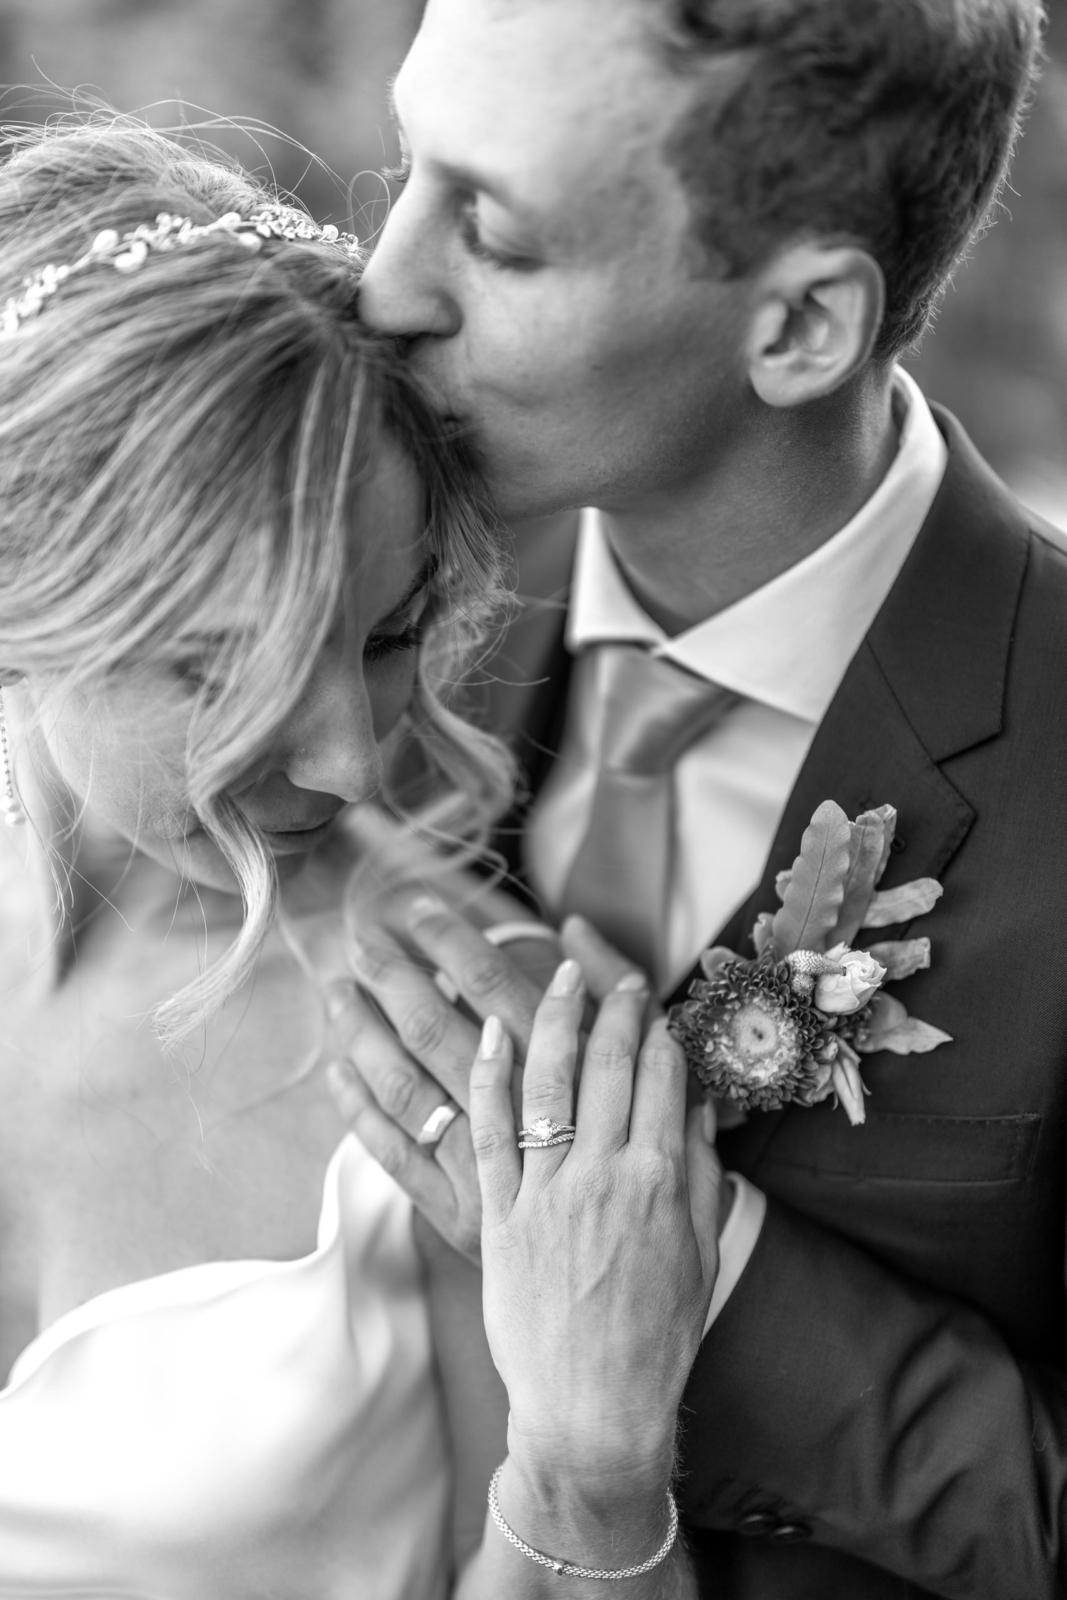 schwarz weiß Detailfoto der Hochzeitsringe